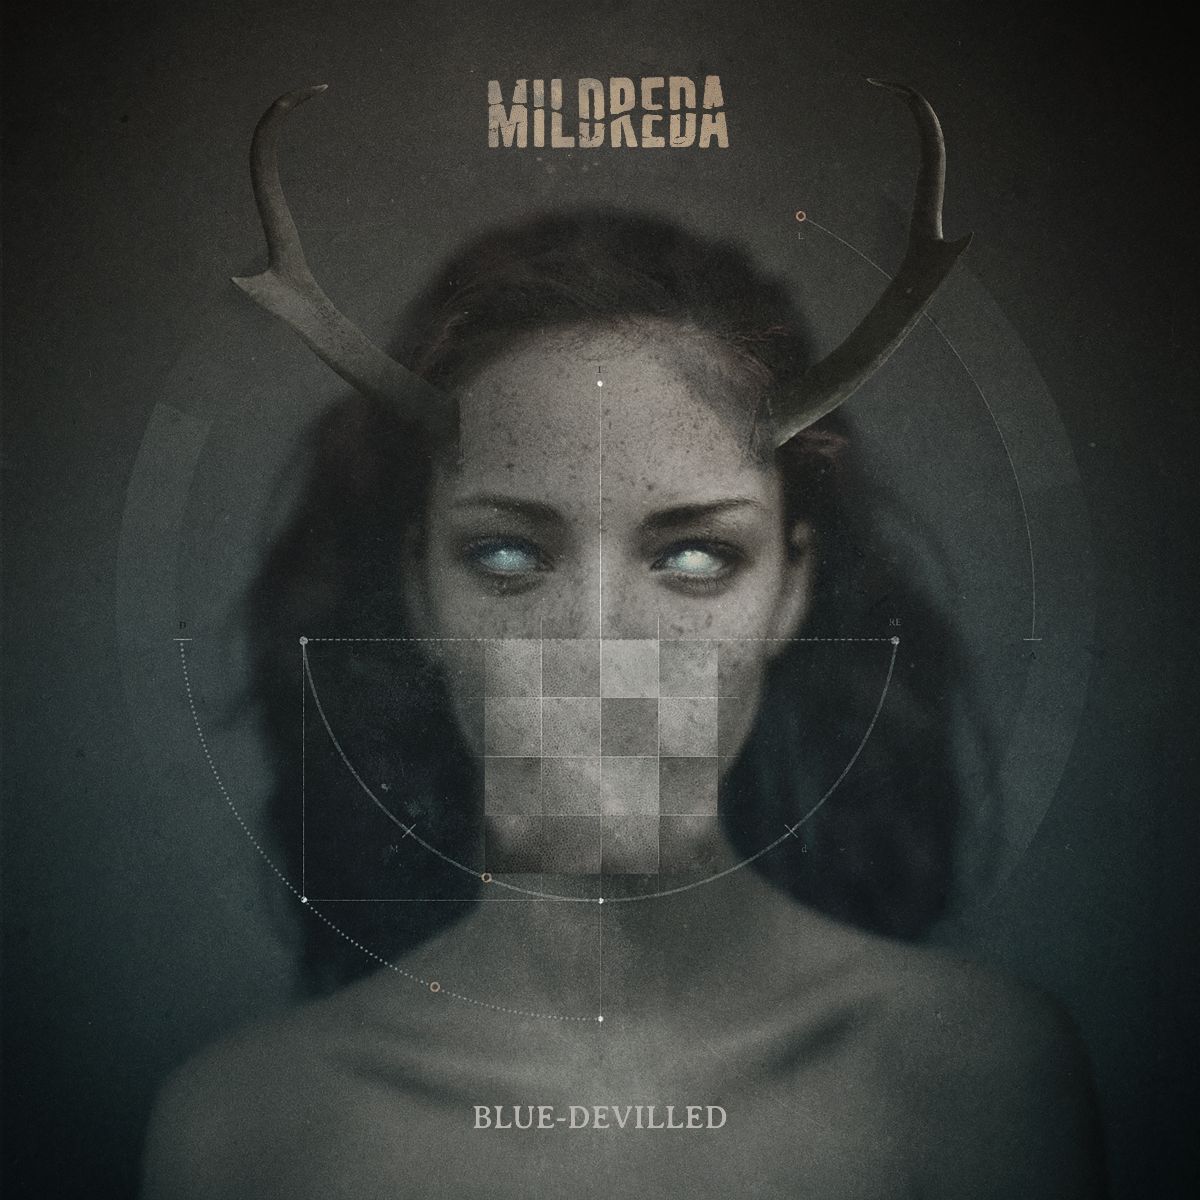 MILDREDA album cover "Blue-Devilled"